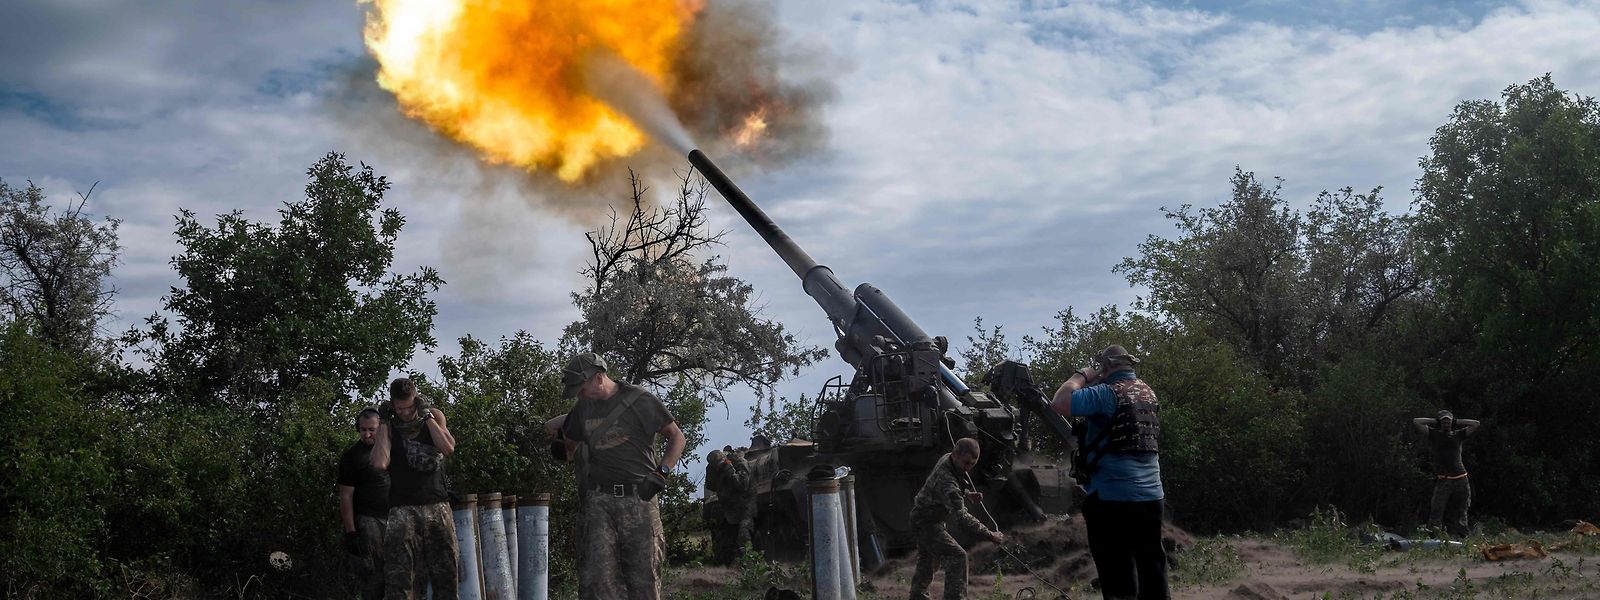 Ukrainische Truppen beim Abfeuern einer Granate.